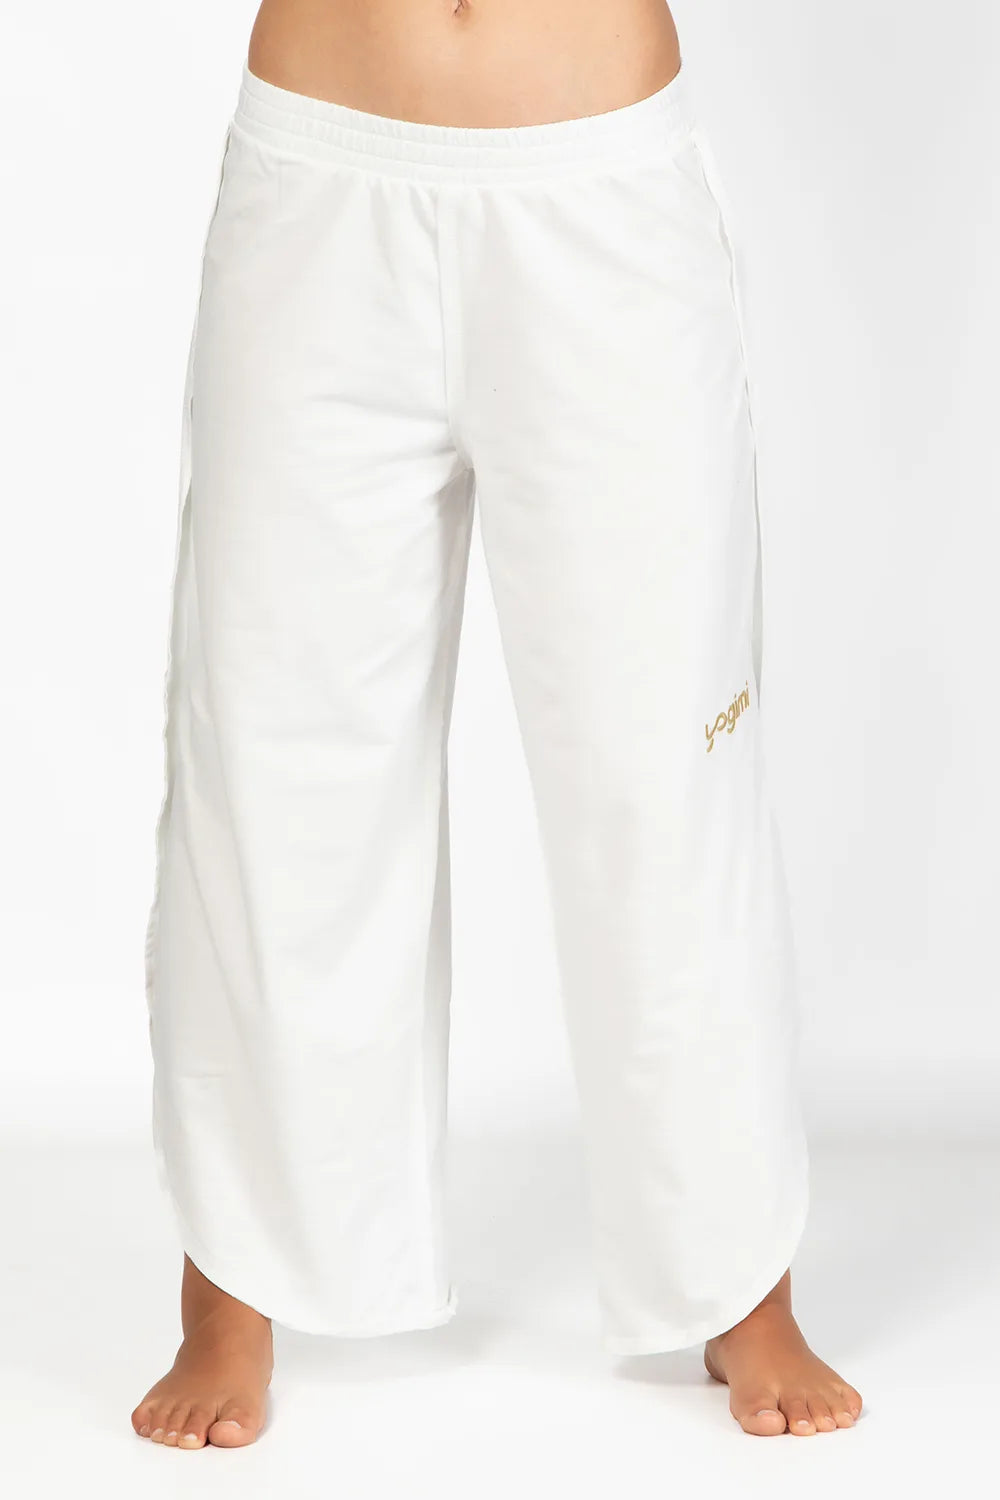 Pantalón ancho y cómodo para usar dentro y fuera de la esterilla, con bordado &quot;Yogimi&quot;. Pant Vayu de Yogimi. 